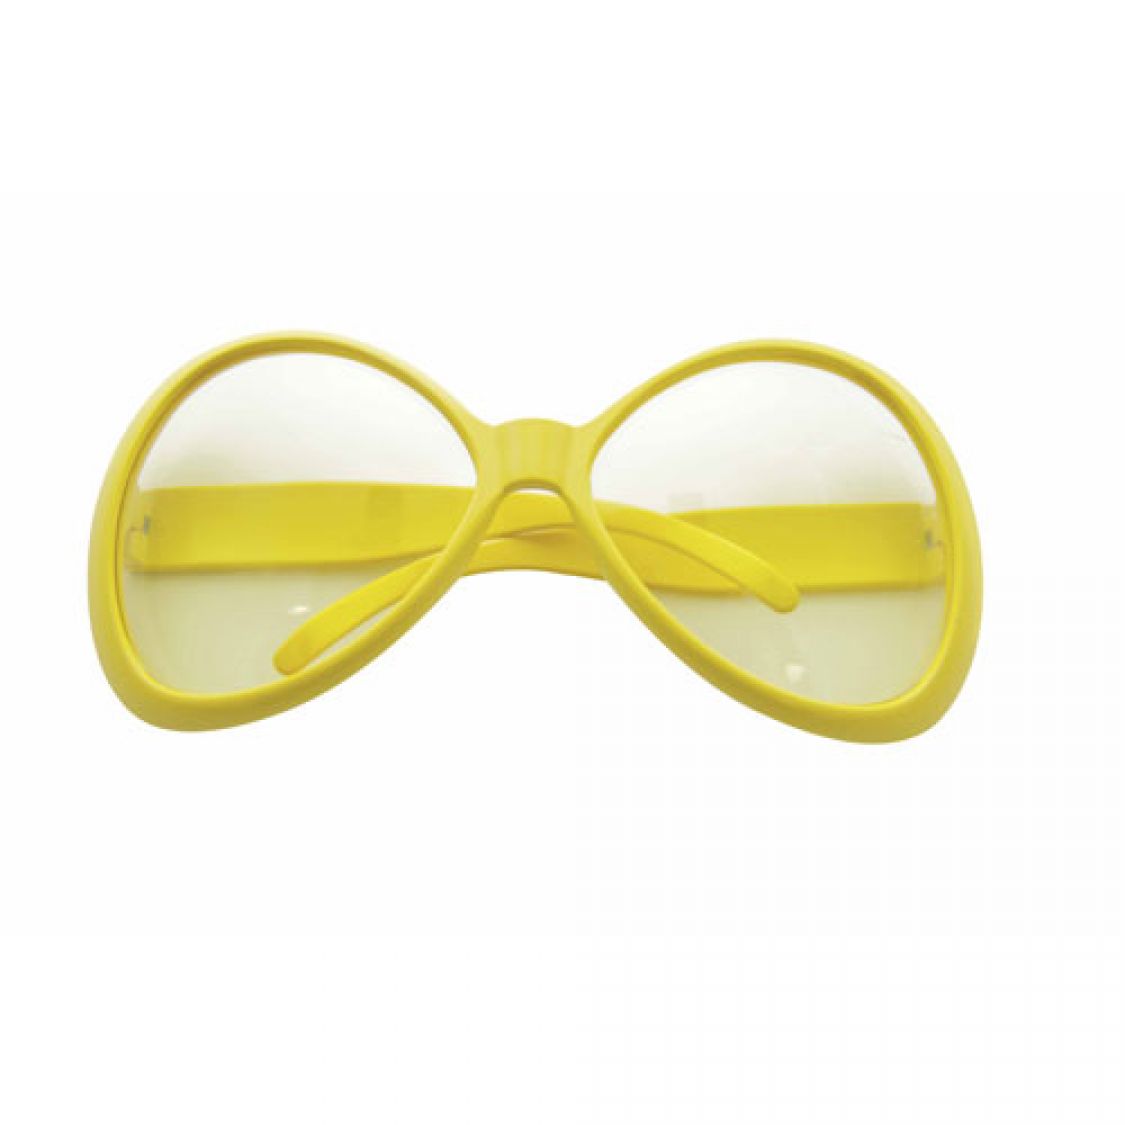 Lunettes Plastique-Mouche GM jaune